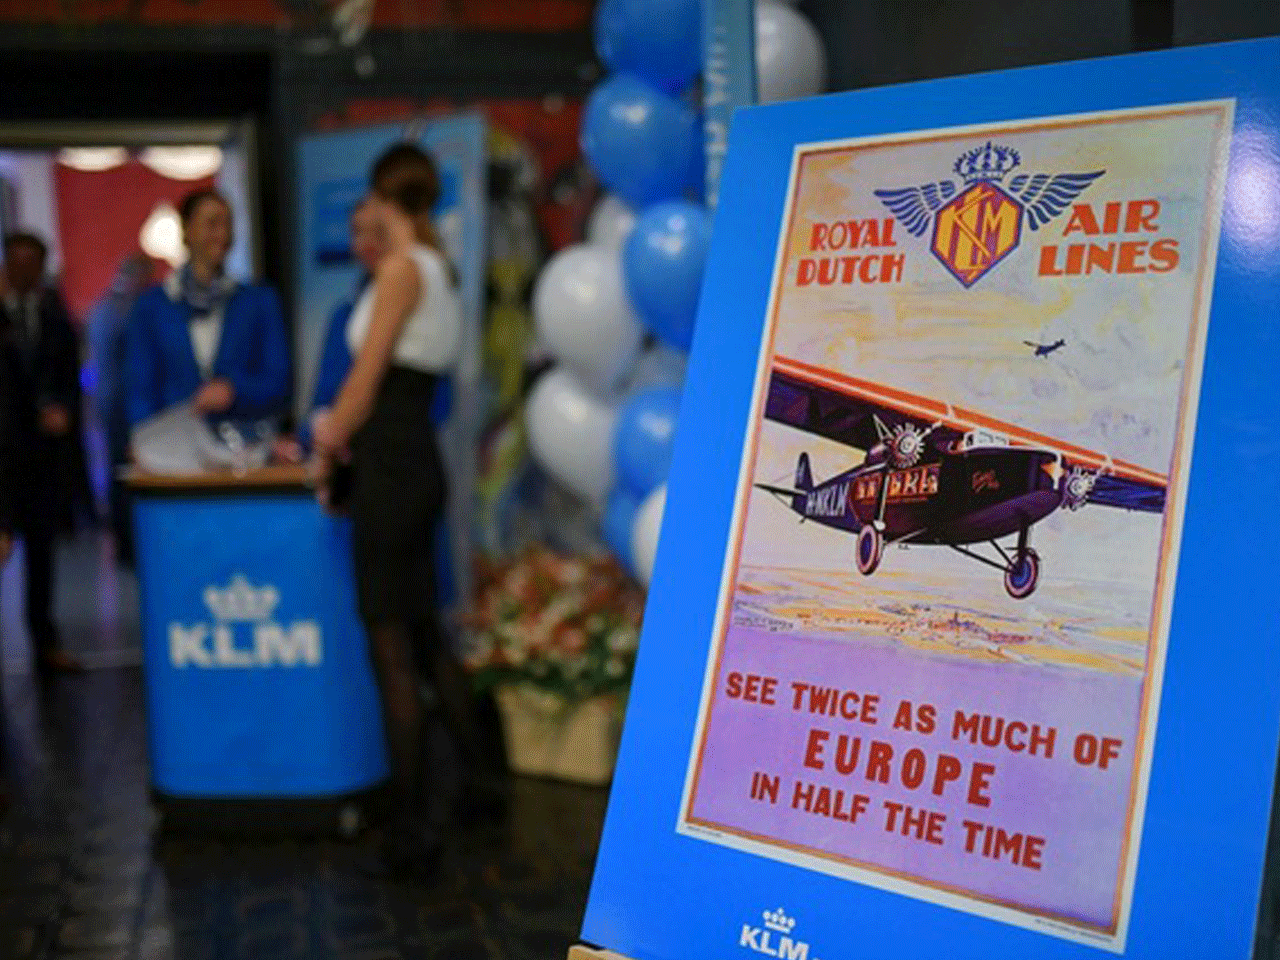 100 let výročí KLM Royal Dutch Airlines